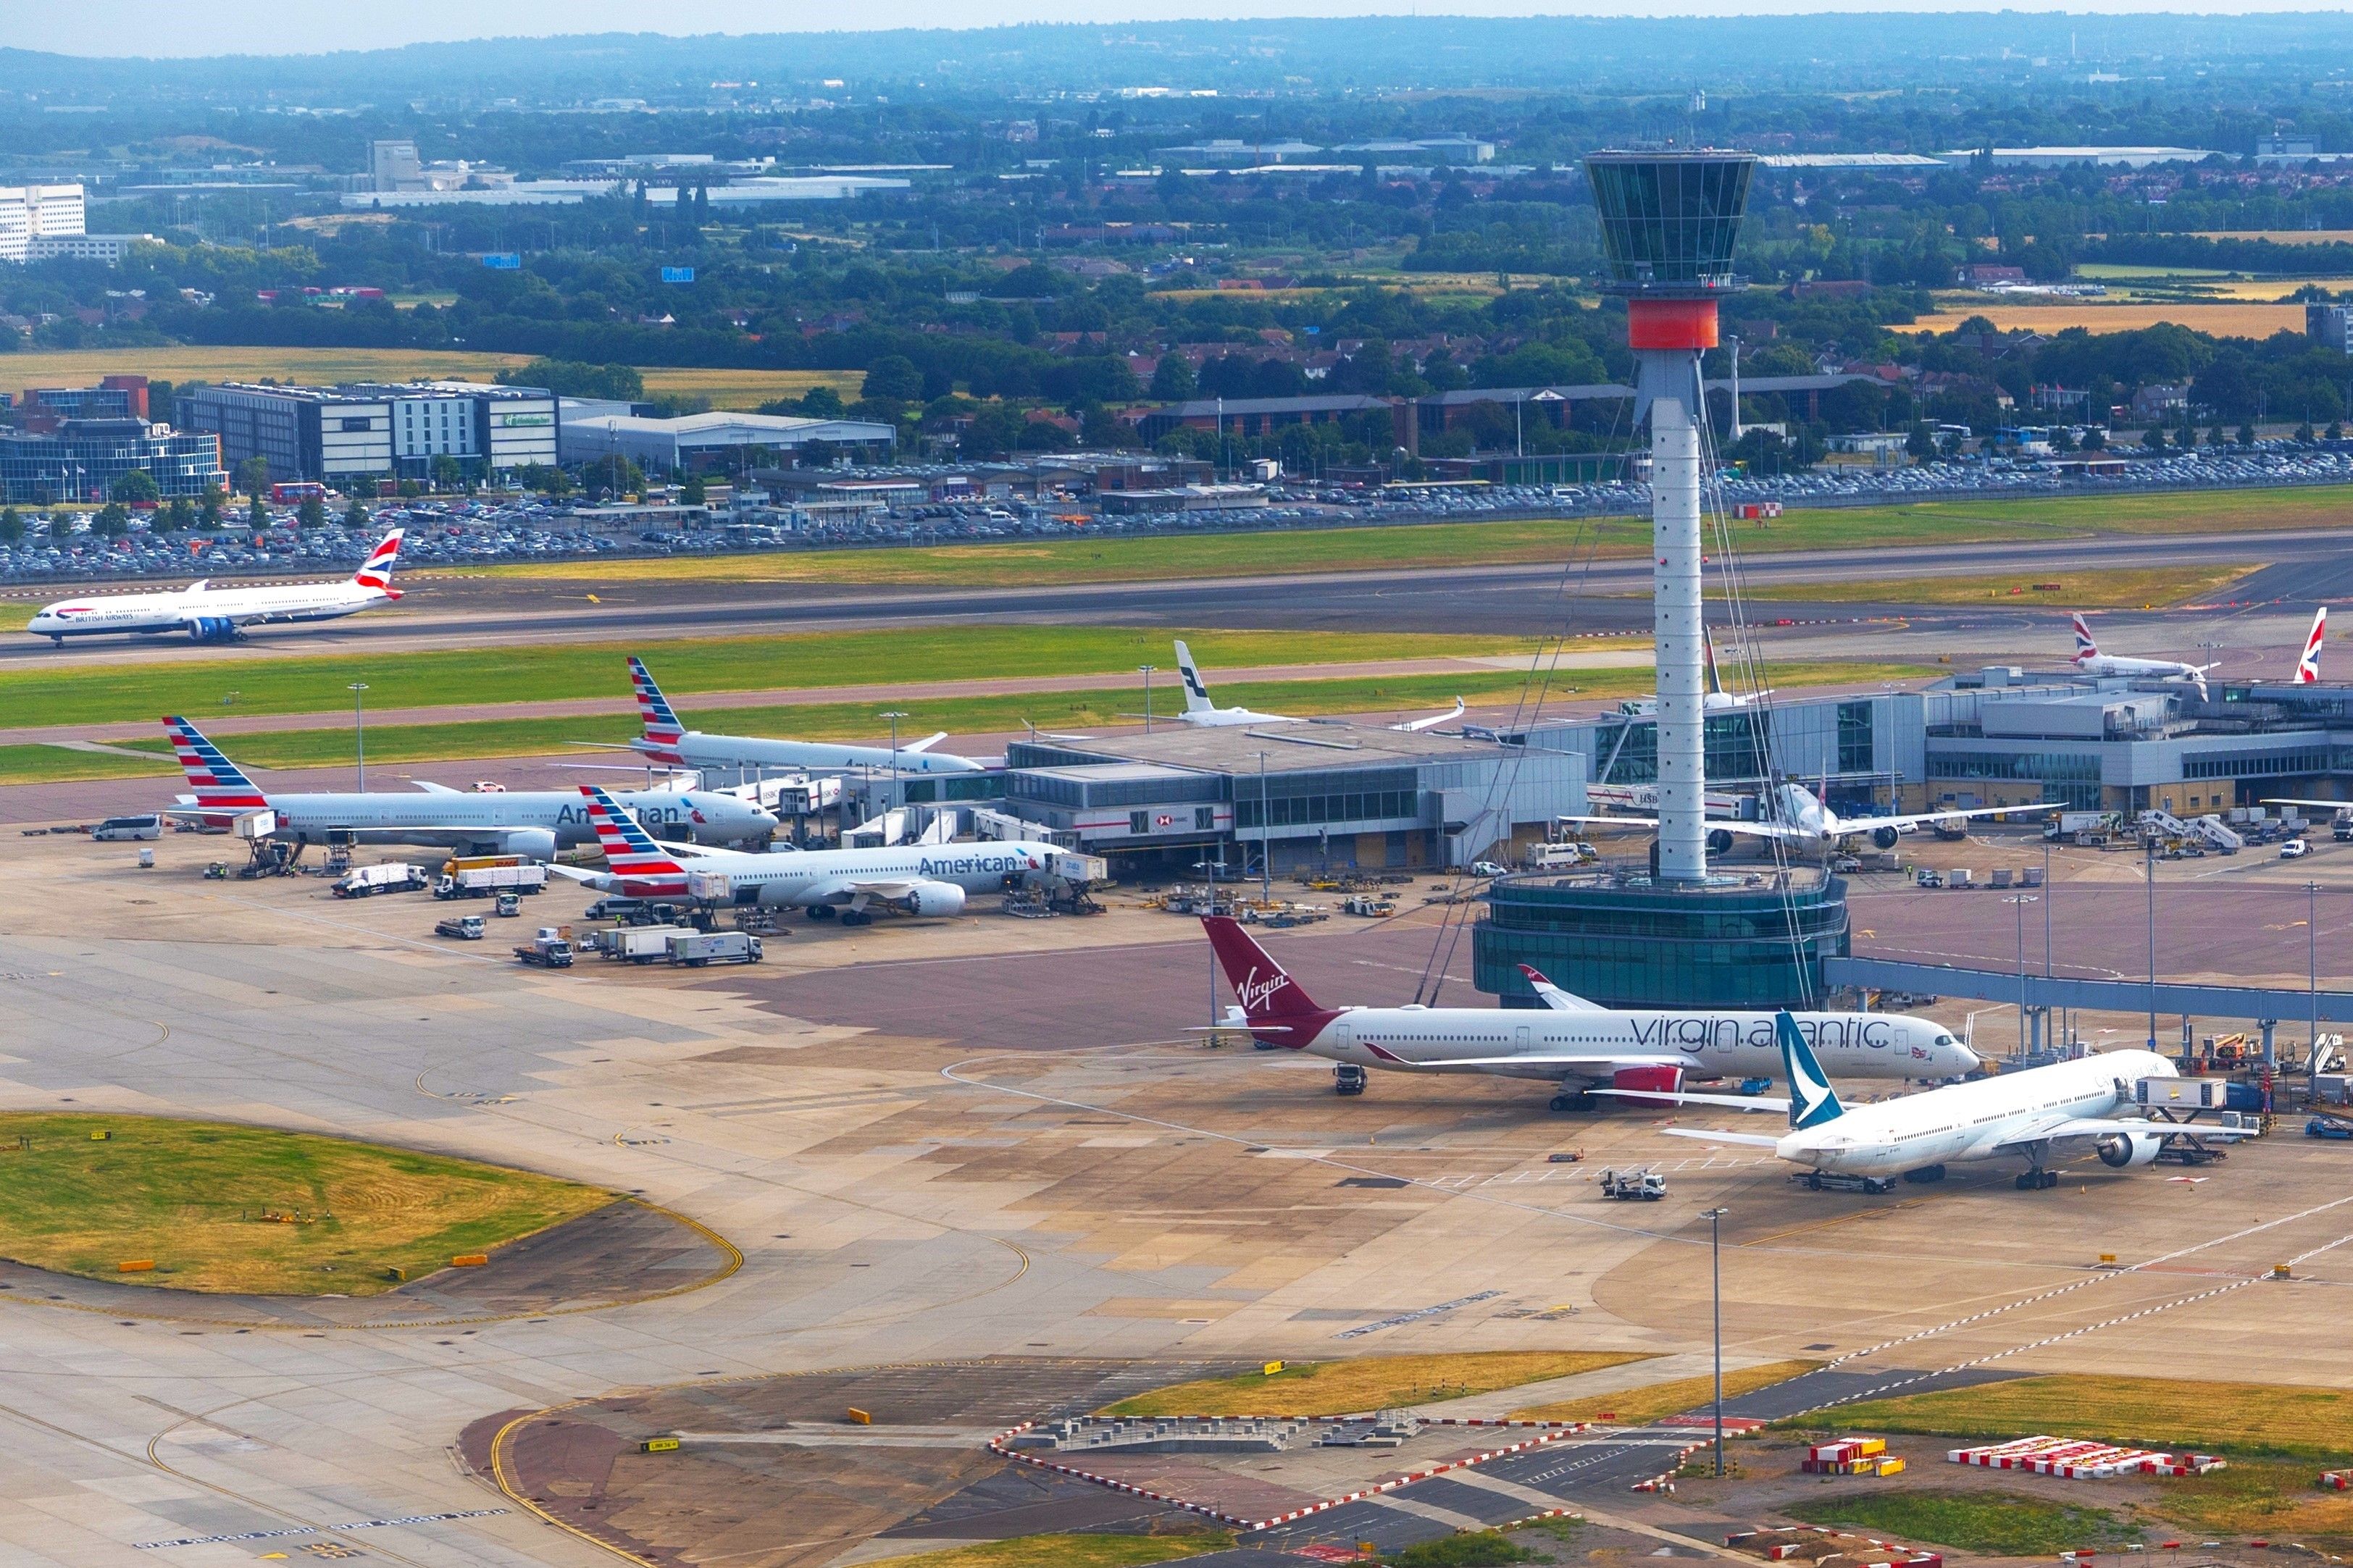 London Heathrow aerial view